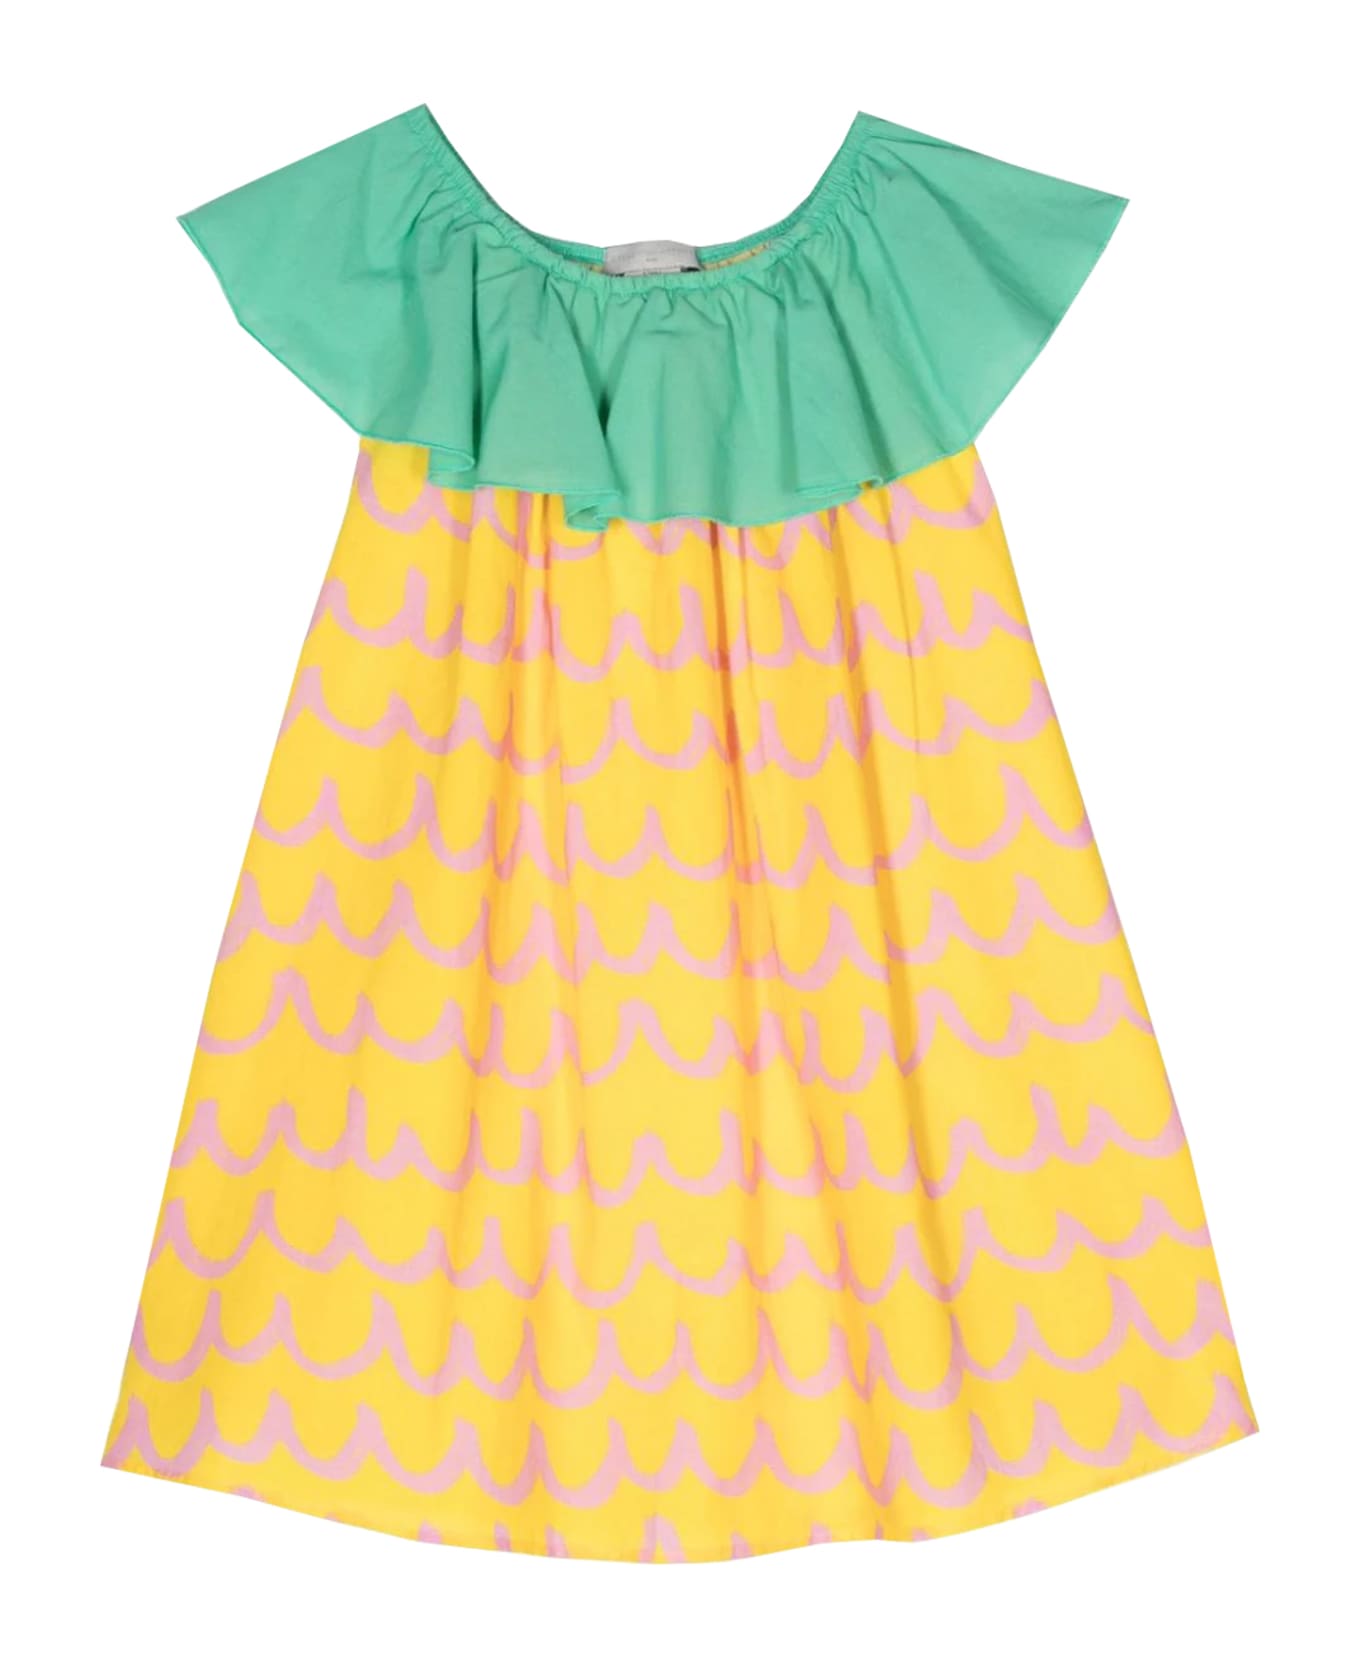 Stella McCartney Kids Dress With Print - Yellow